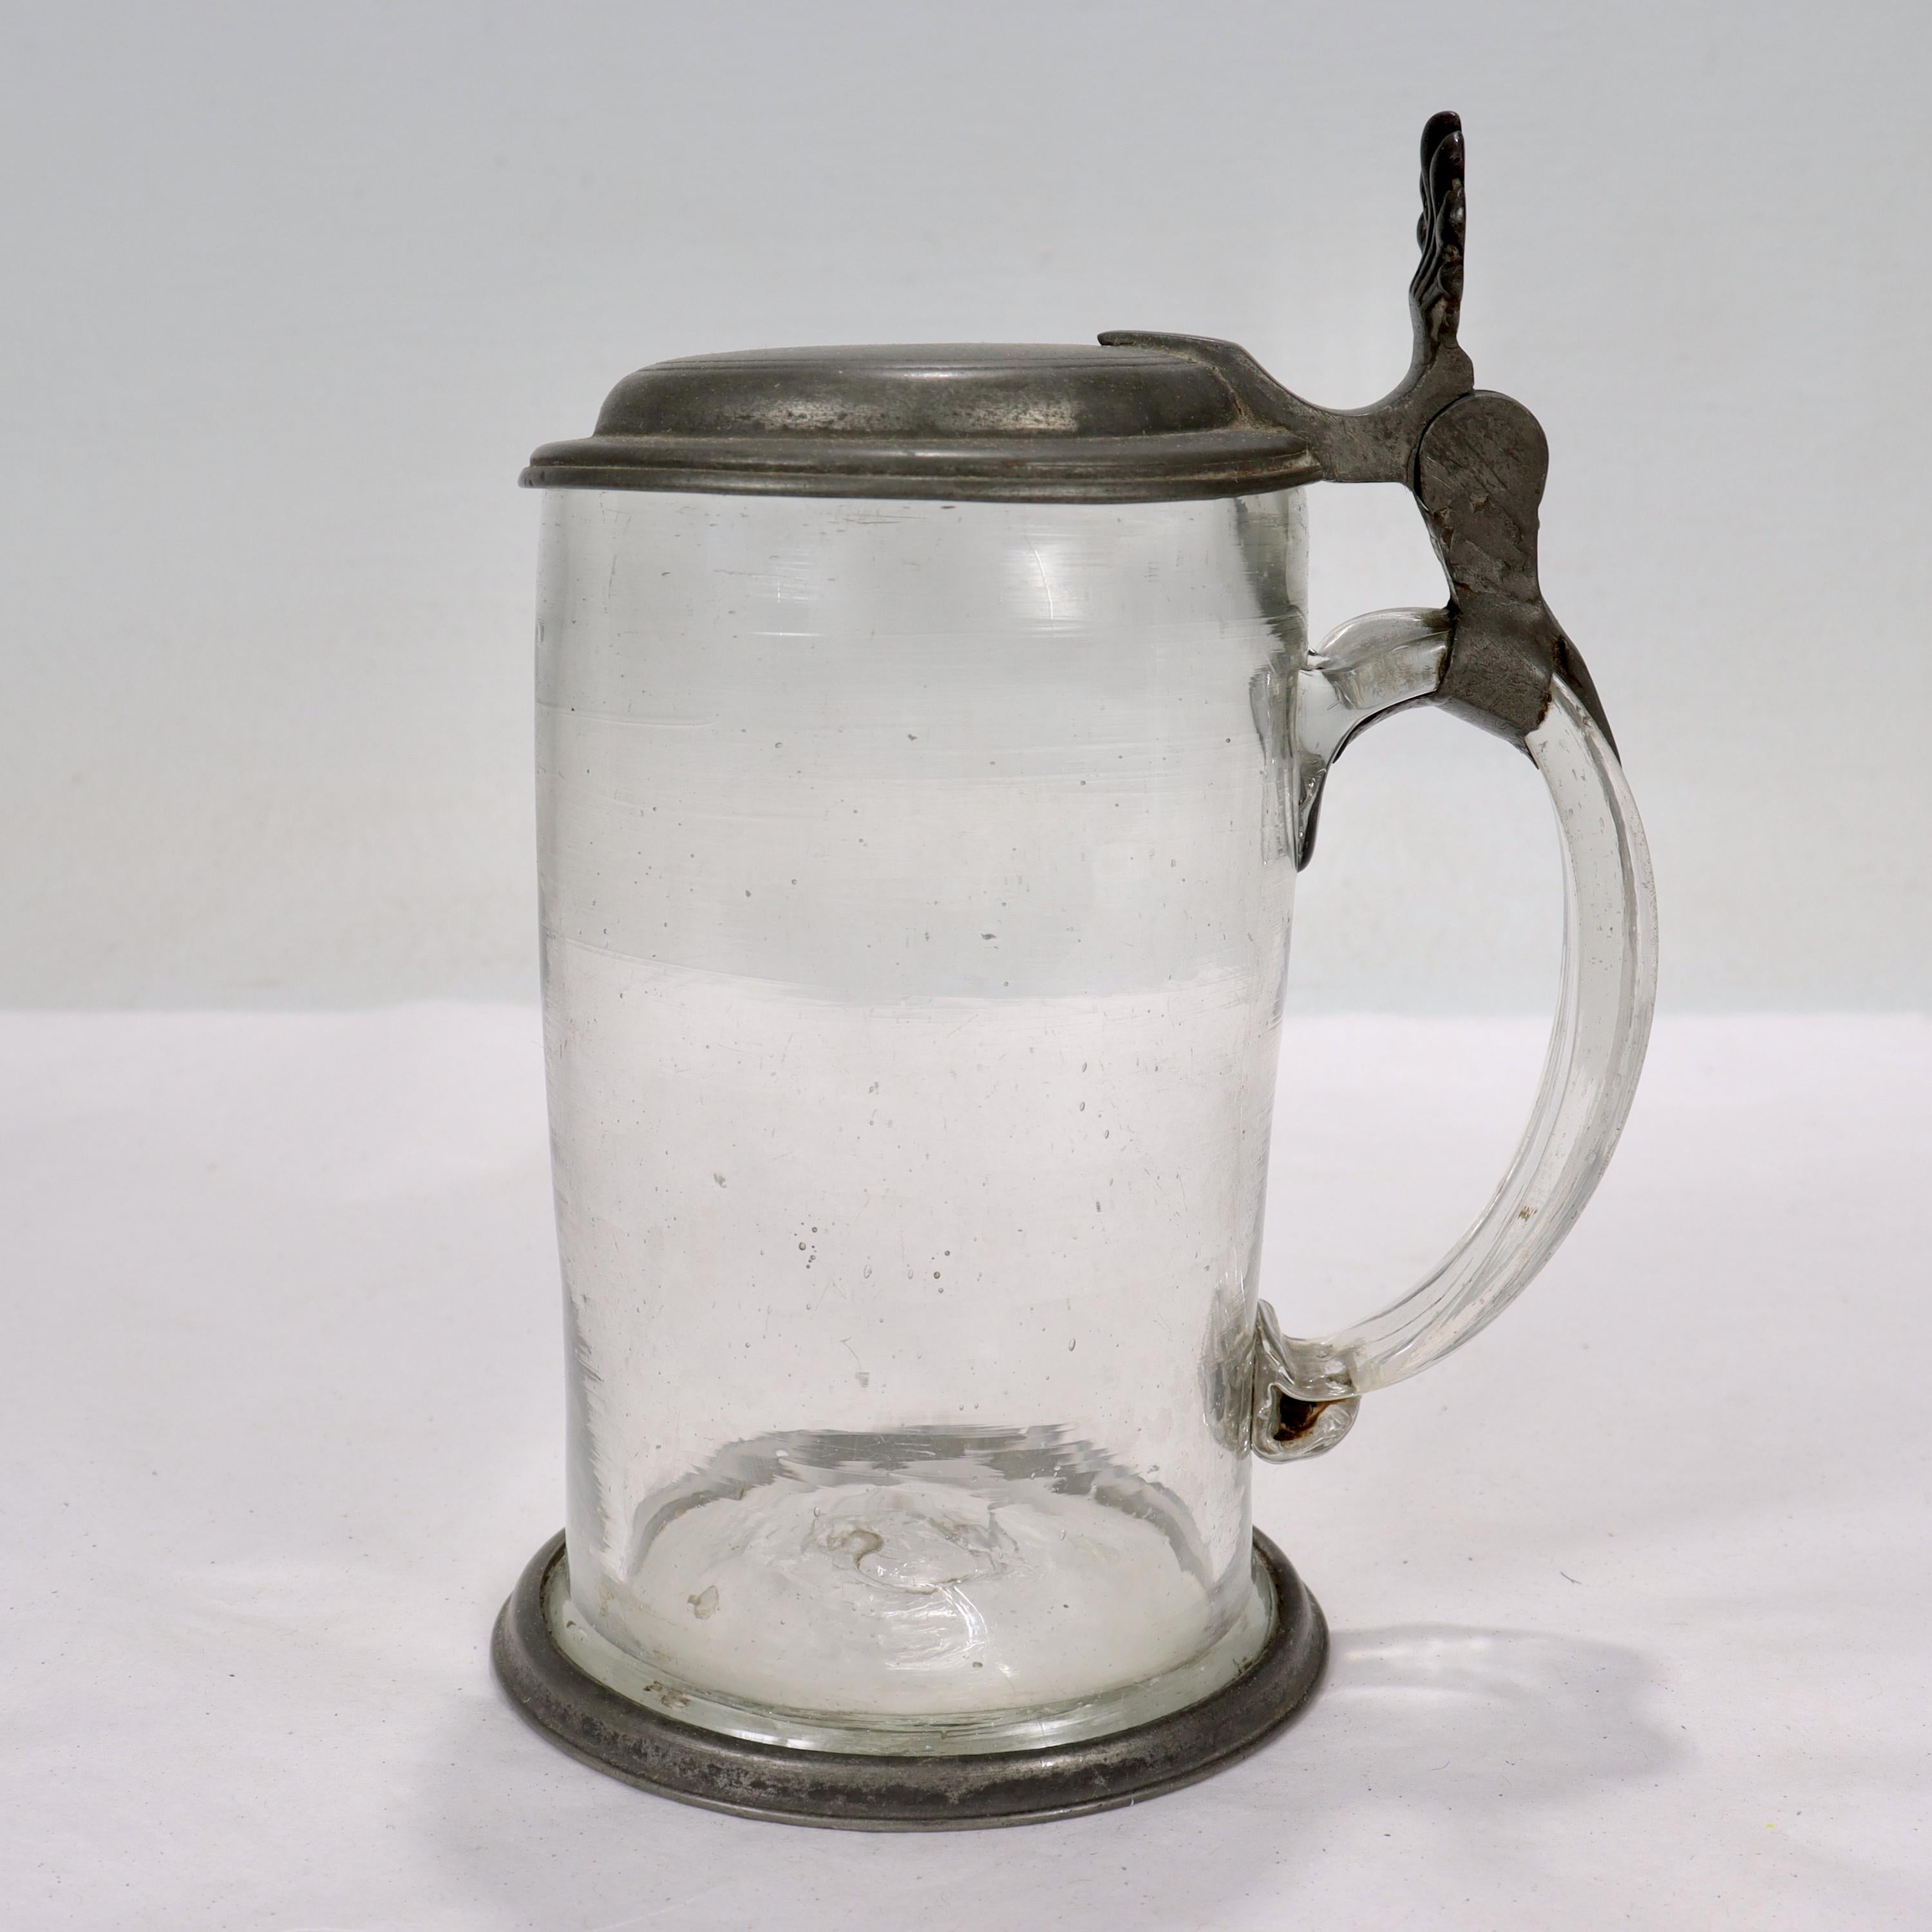 Une belle stéle à bière antique en étain et en verre du 18e siècle.

Sous la forme d'un stein en verre monté avec un couvercle en étain et un bord de pied en étain. 

Monogrammé sur le couvercle pour 